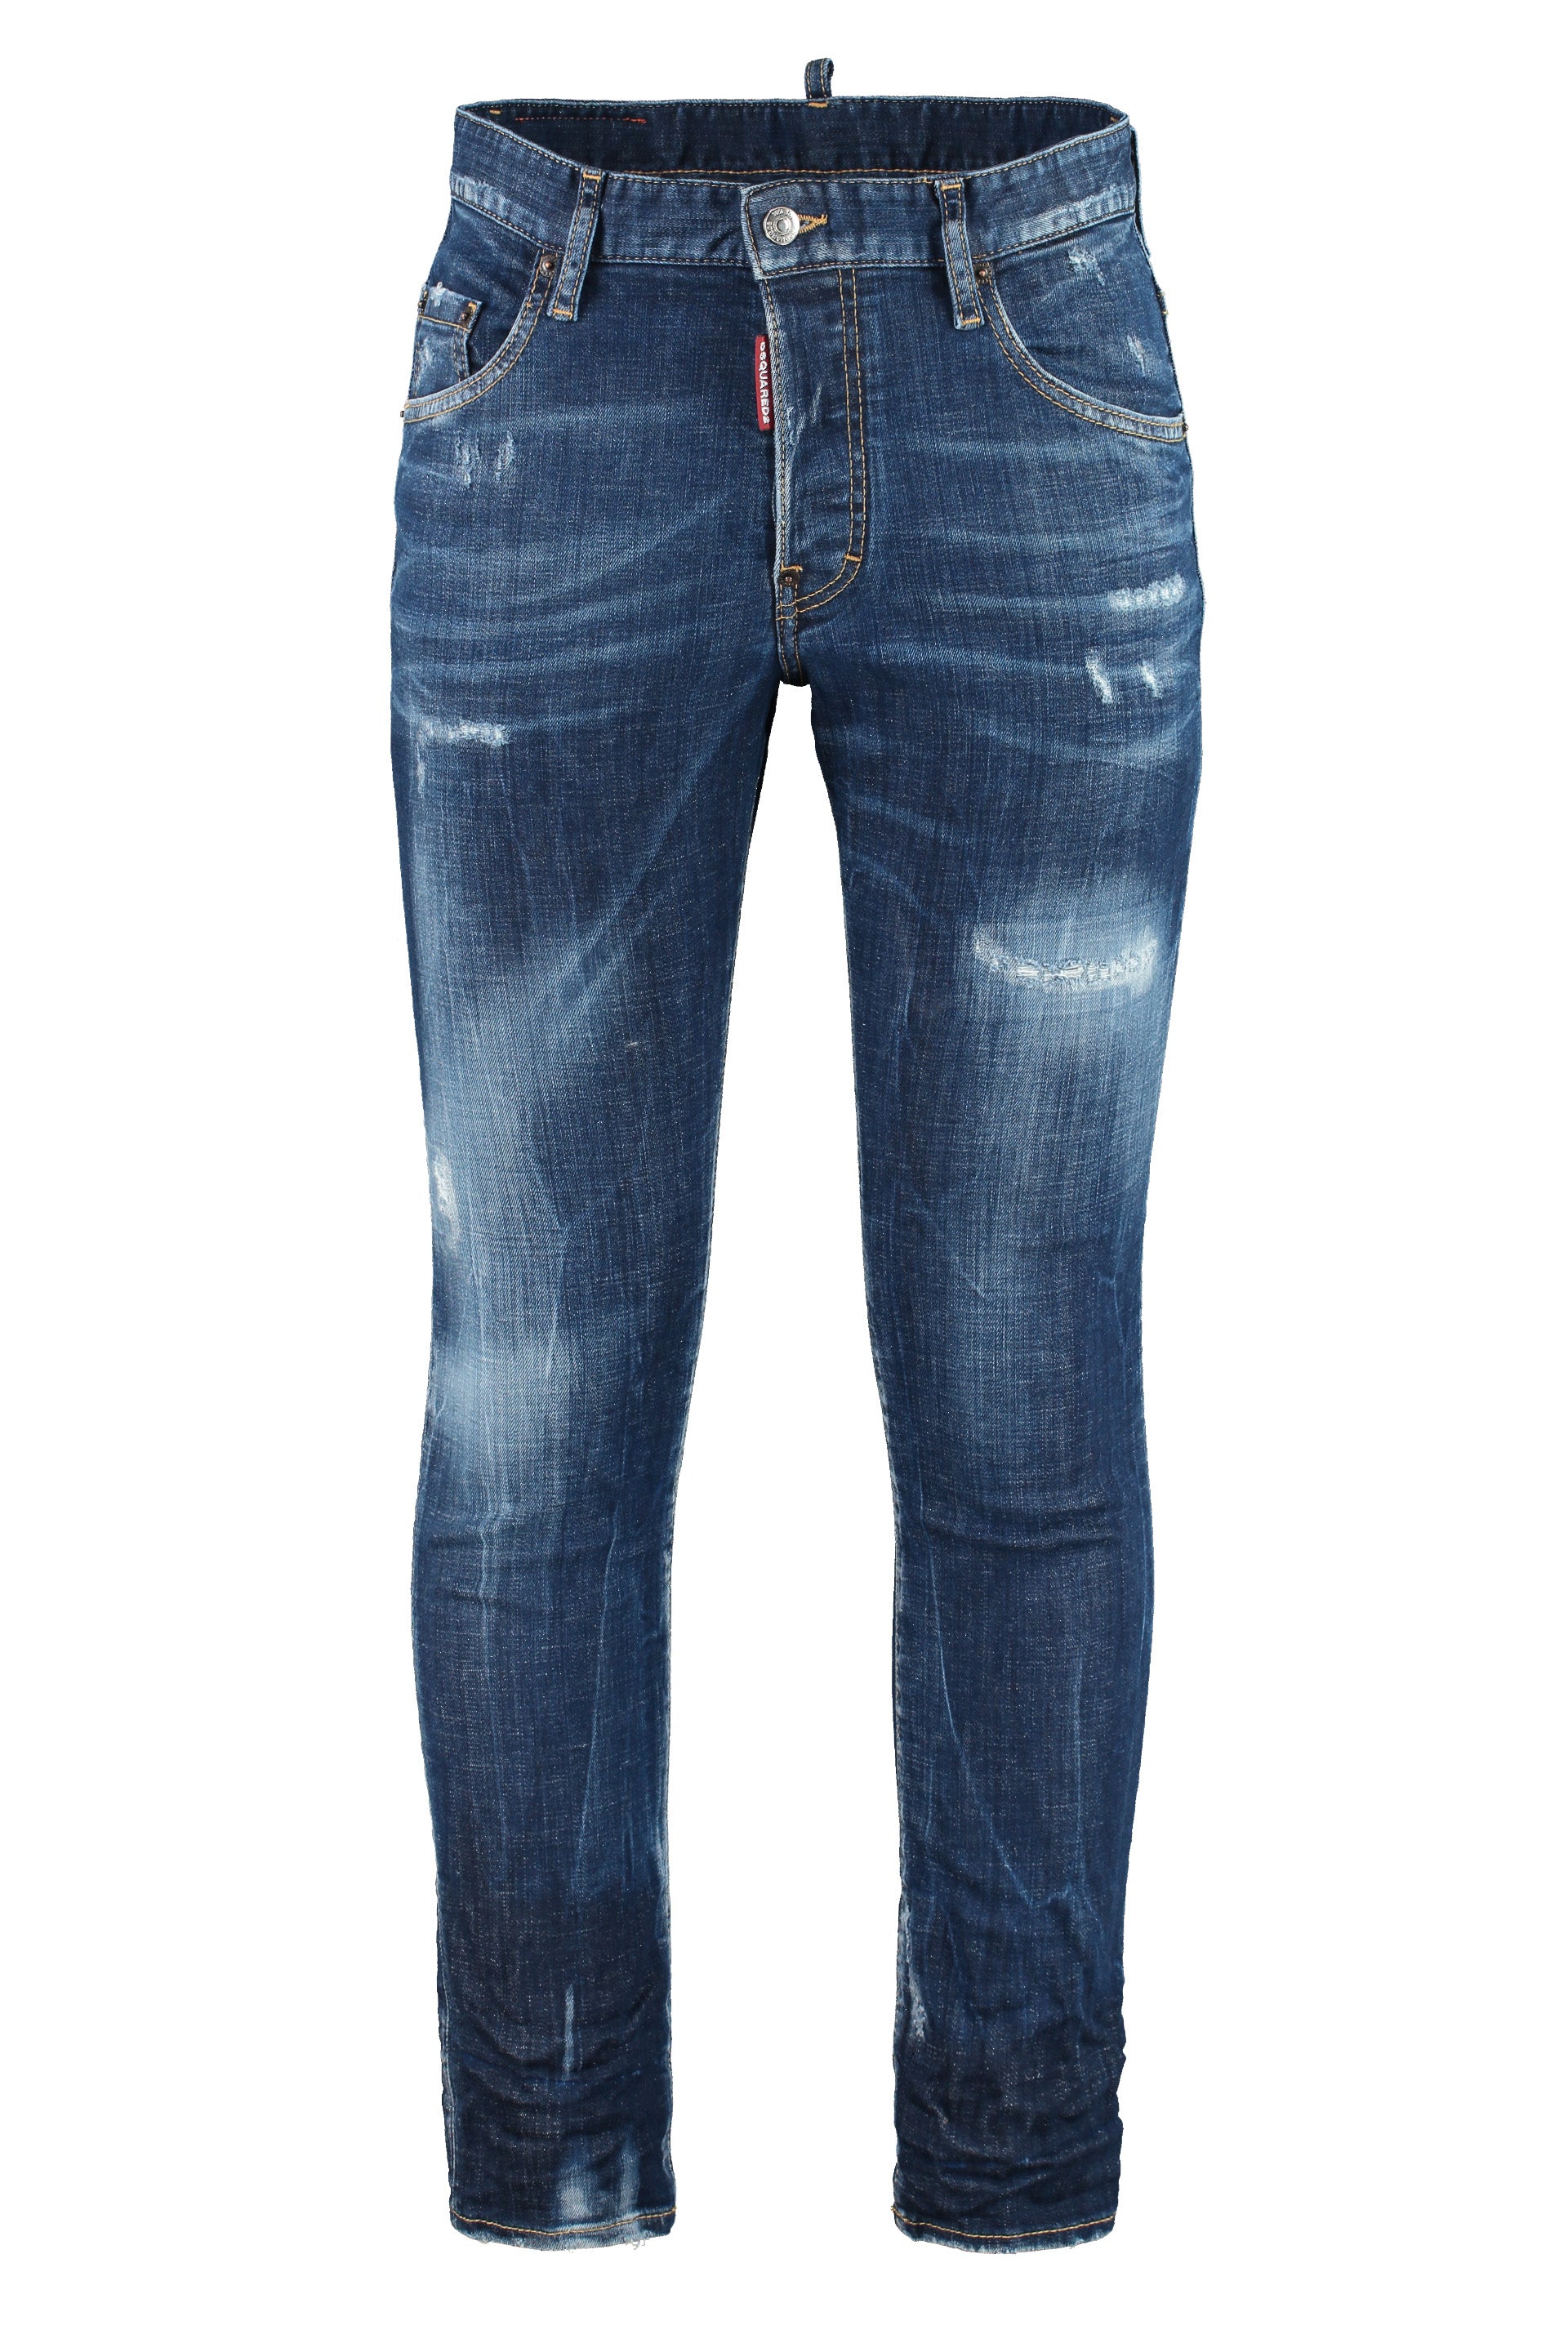 5-pocket jeans